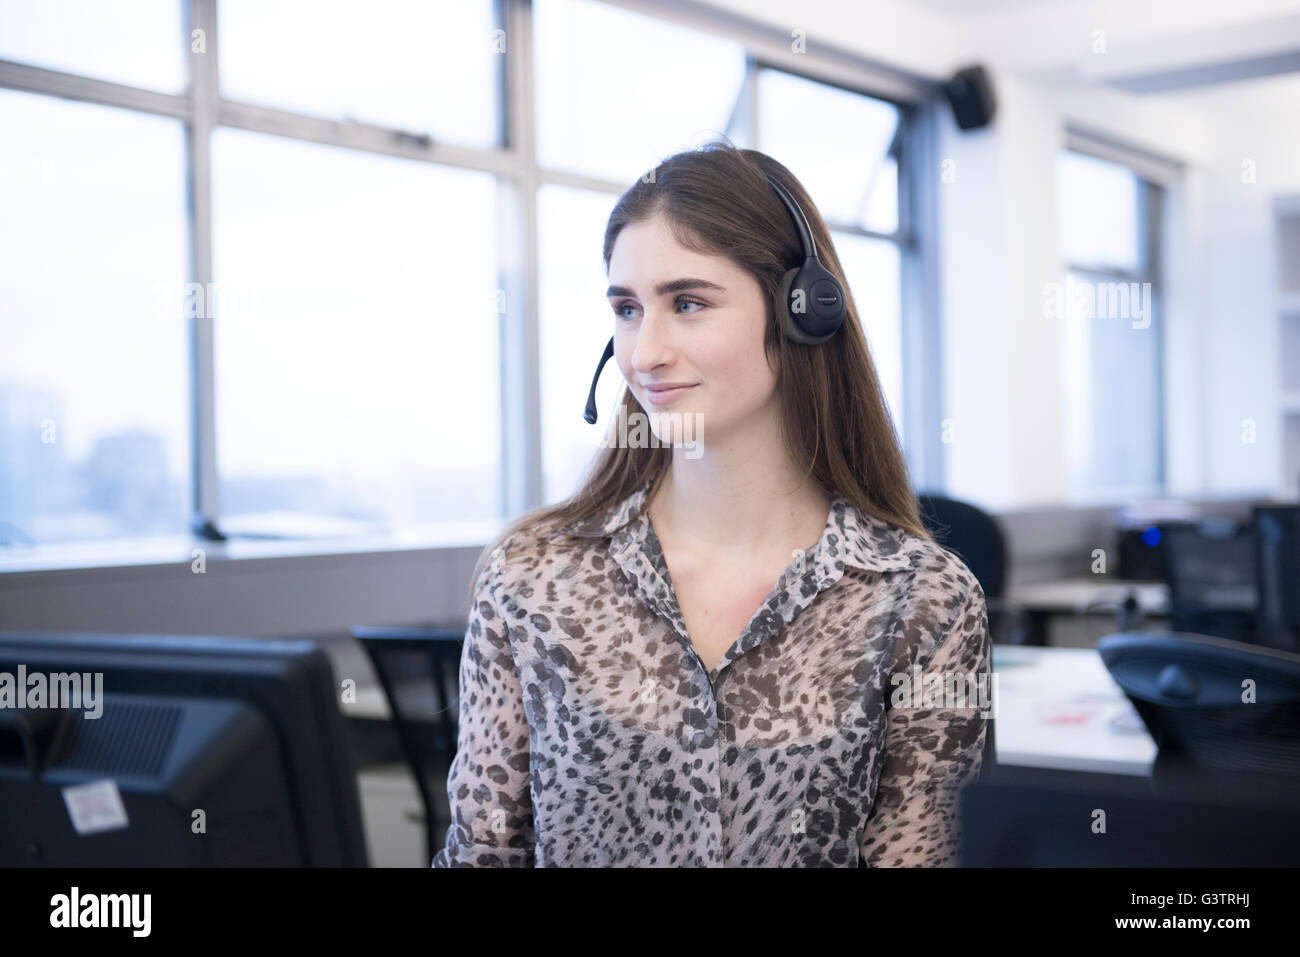 Eine junge berufstätige Frau in einer Büroumgebung Anrufe über einen Kopfhörer empfangen. Stockfoto